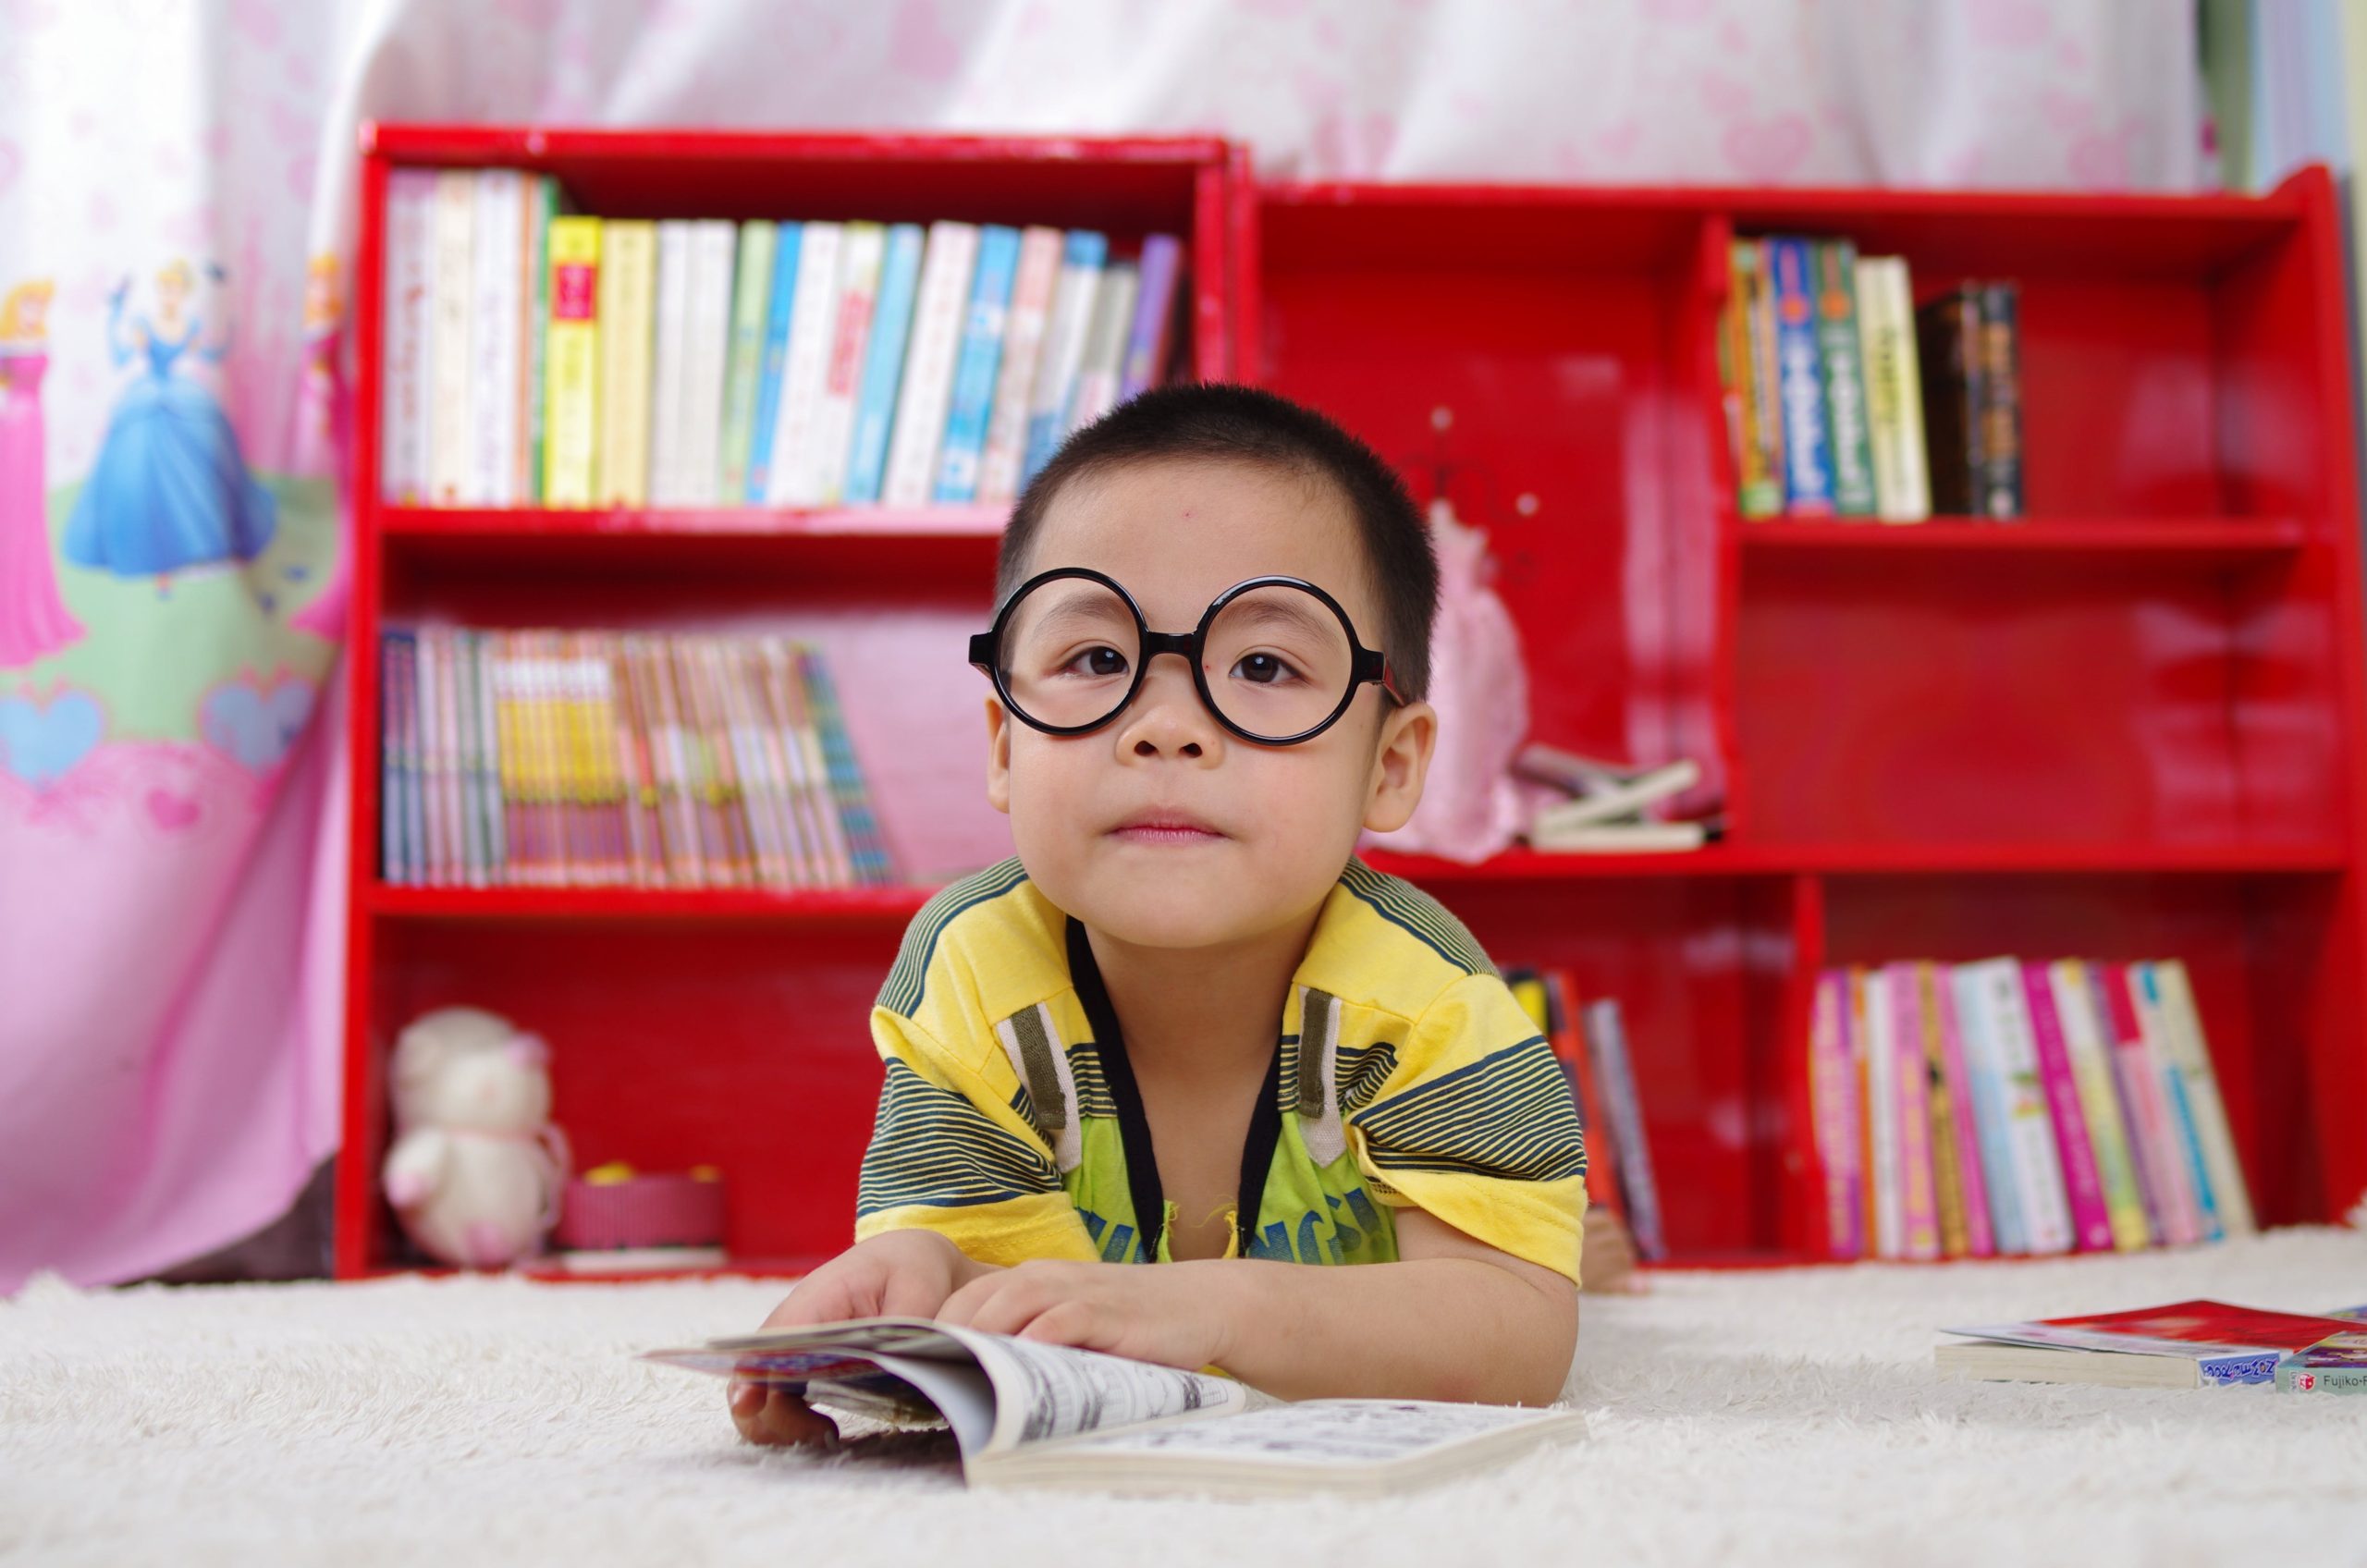 Chłopiec w okularach uczy się na tle książek.